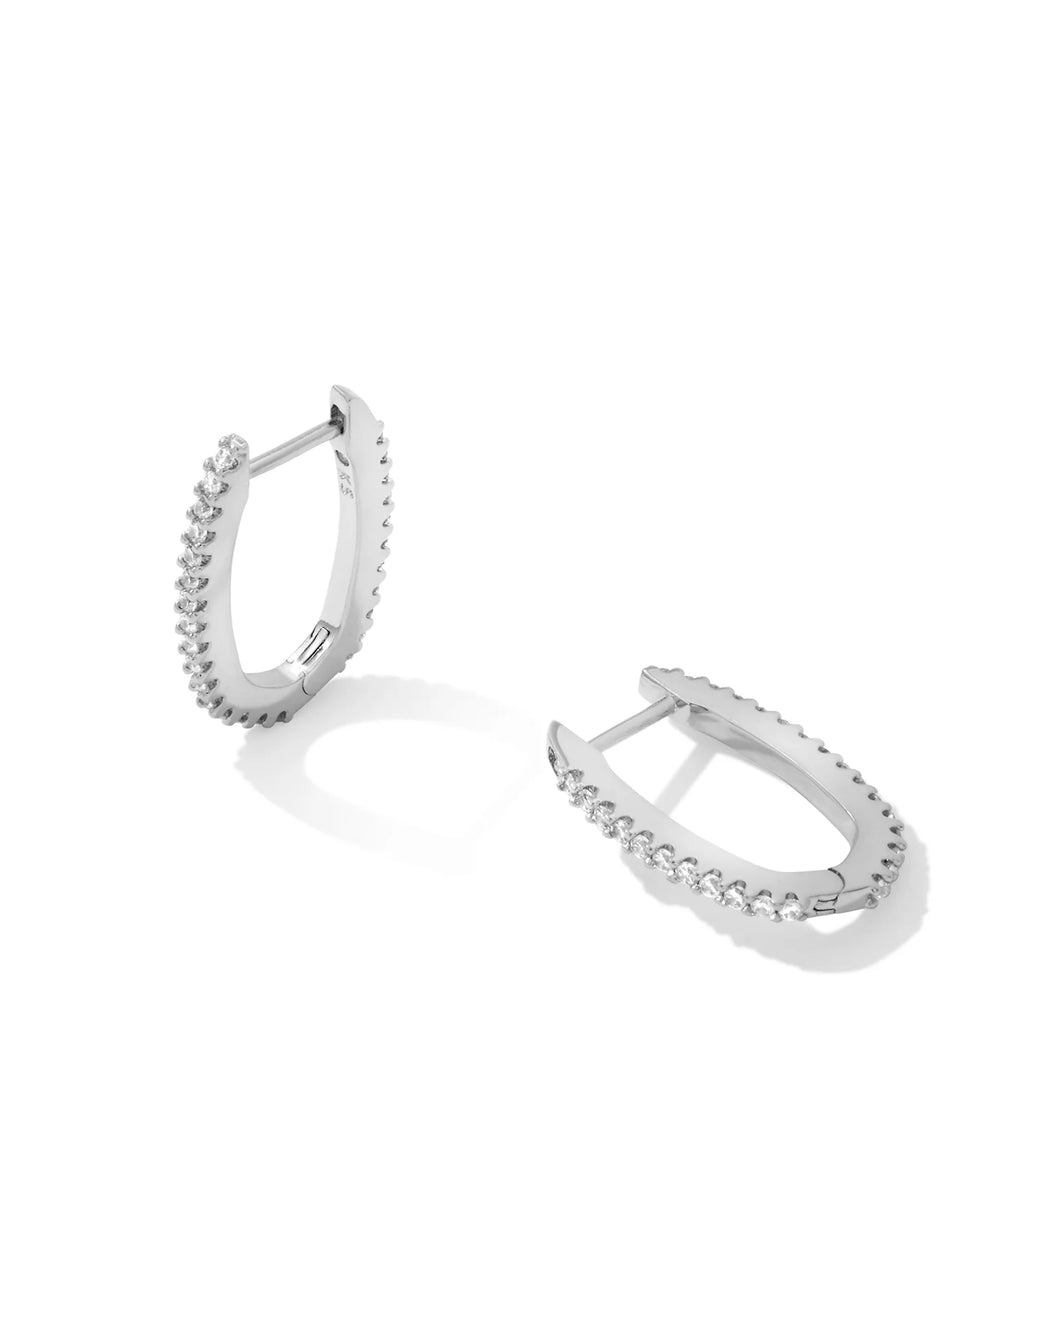 Kendra Scott Murphy Silver Hoop Earrings in White Crystal